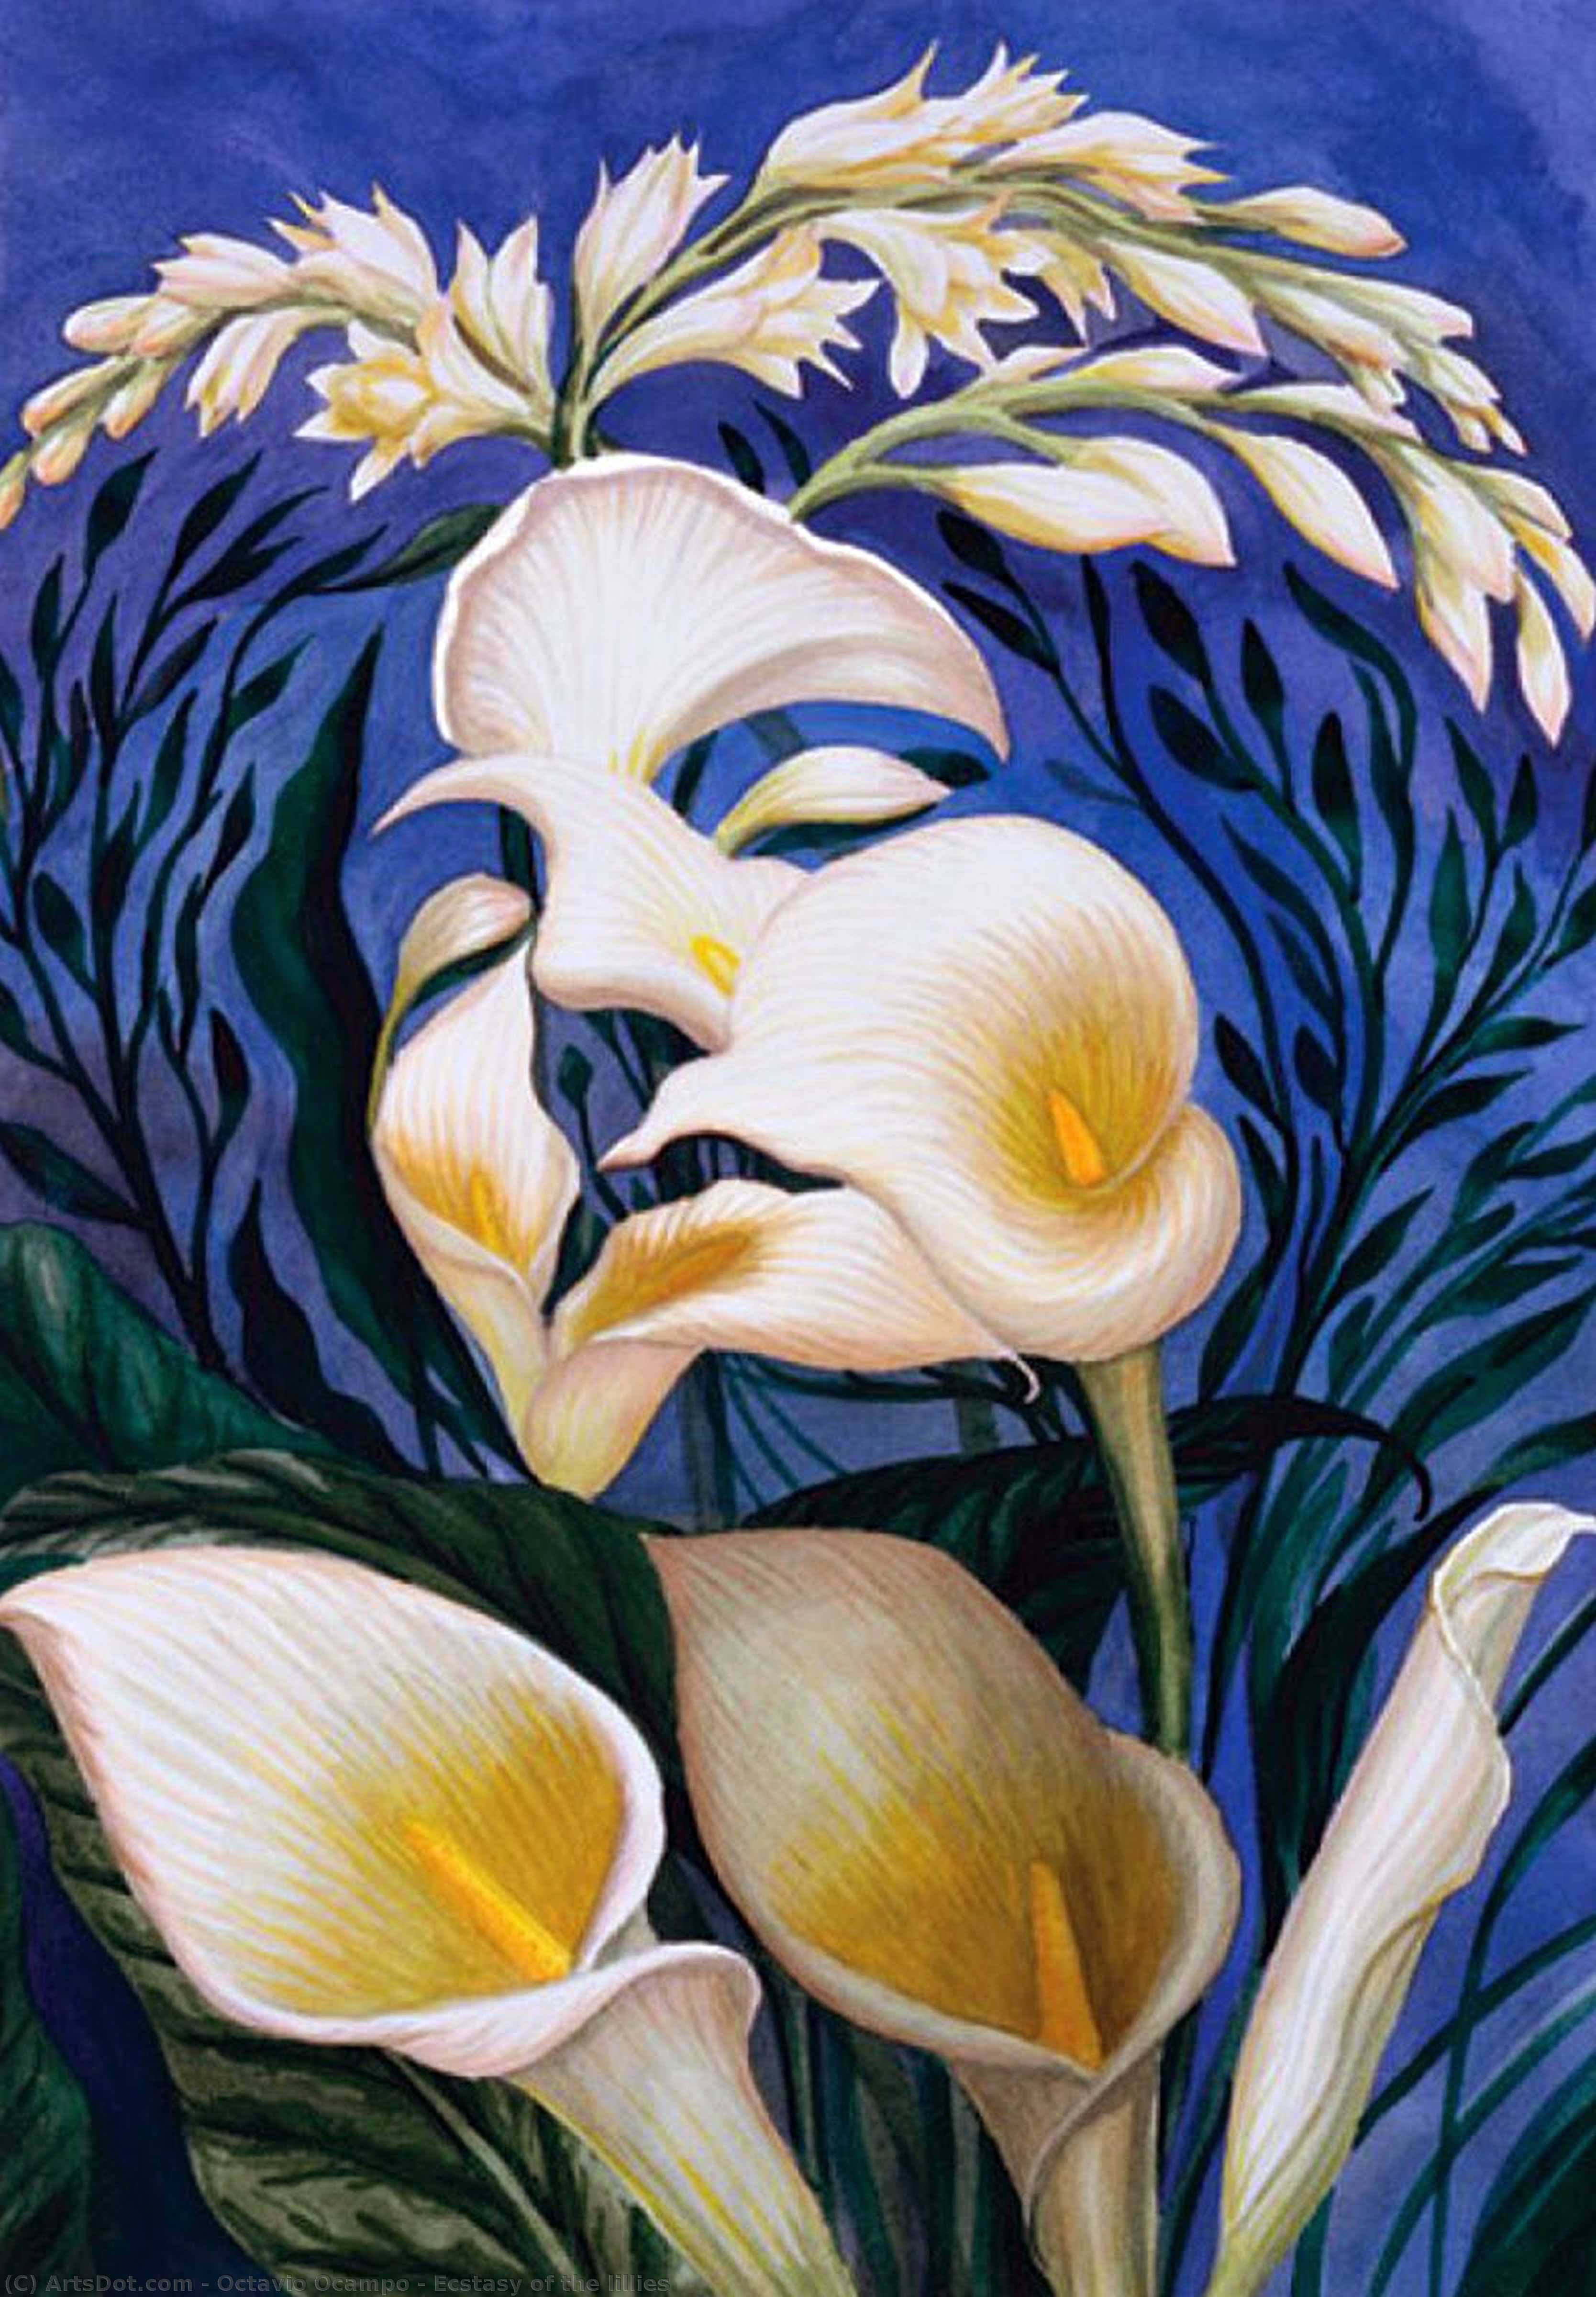 Ecstasy of the lillies by Octavio Ocampo Octavio Ocampo | ArtsDot.com